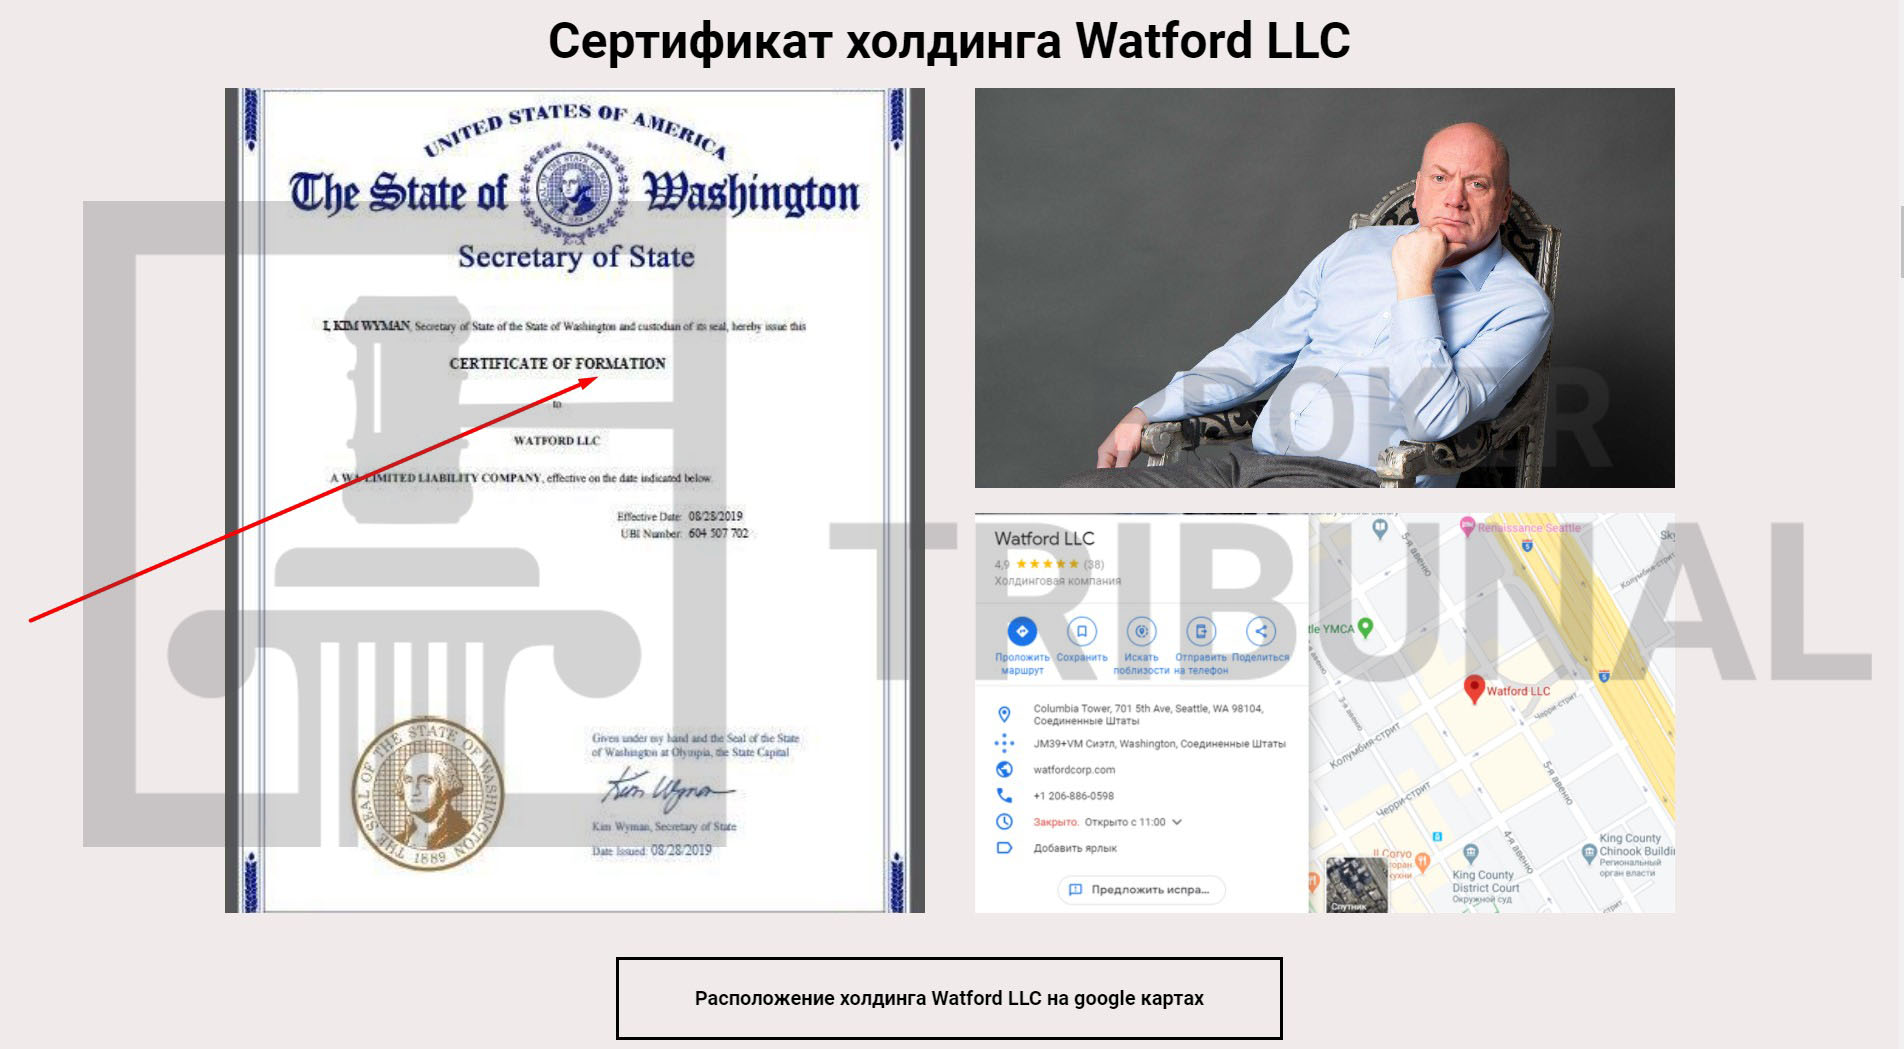 Watford LLC